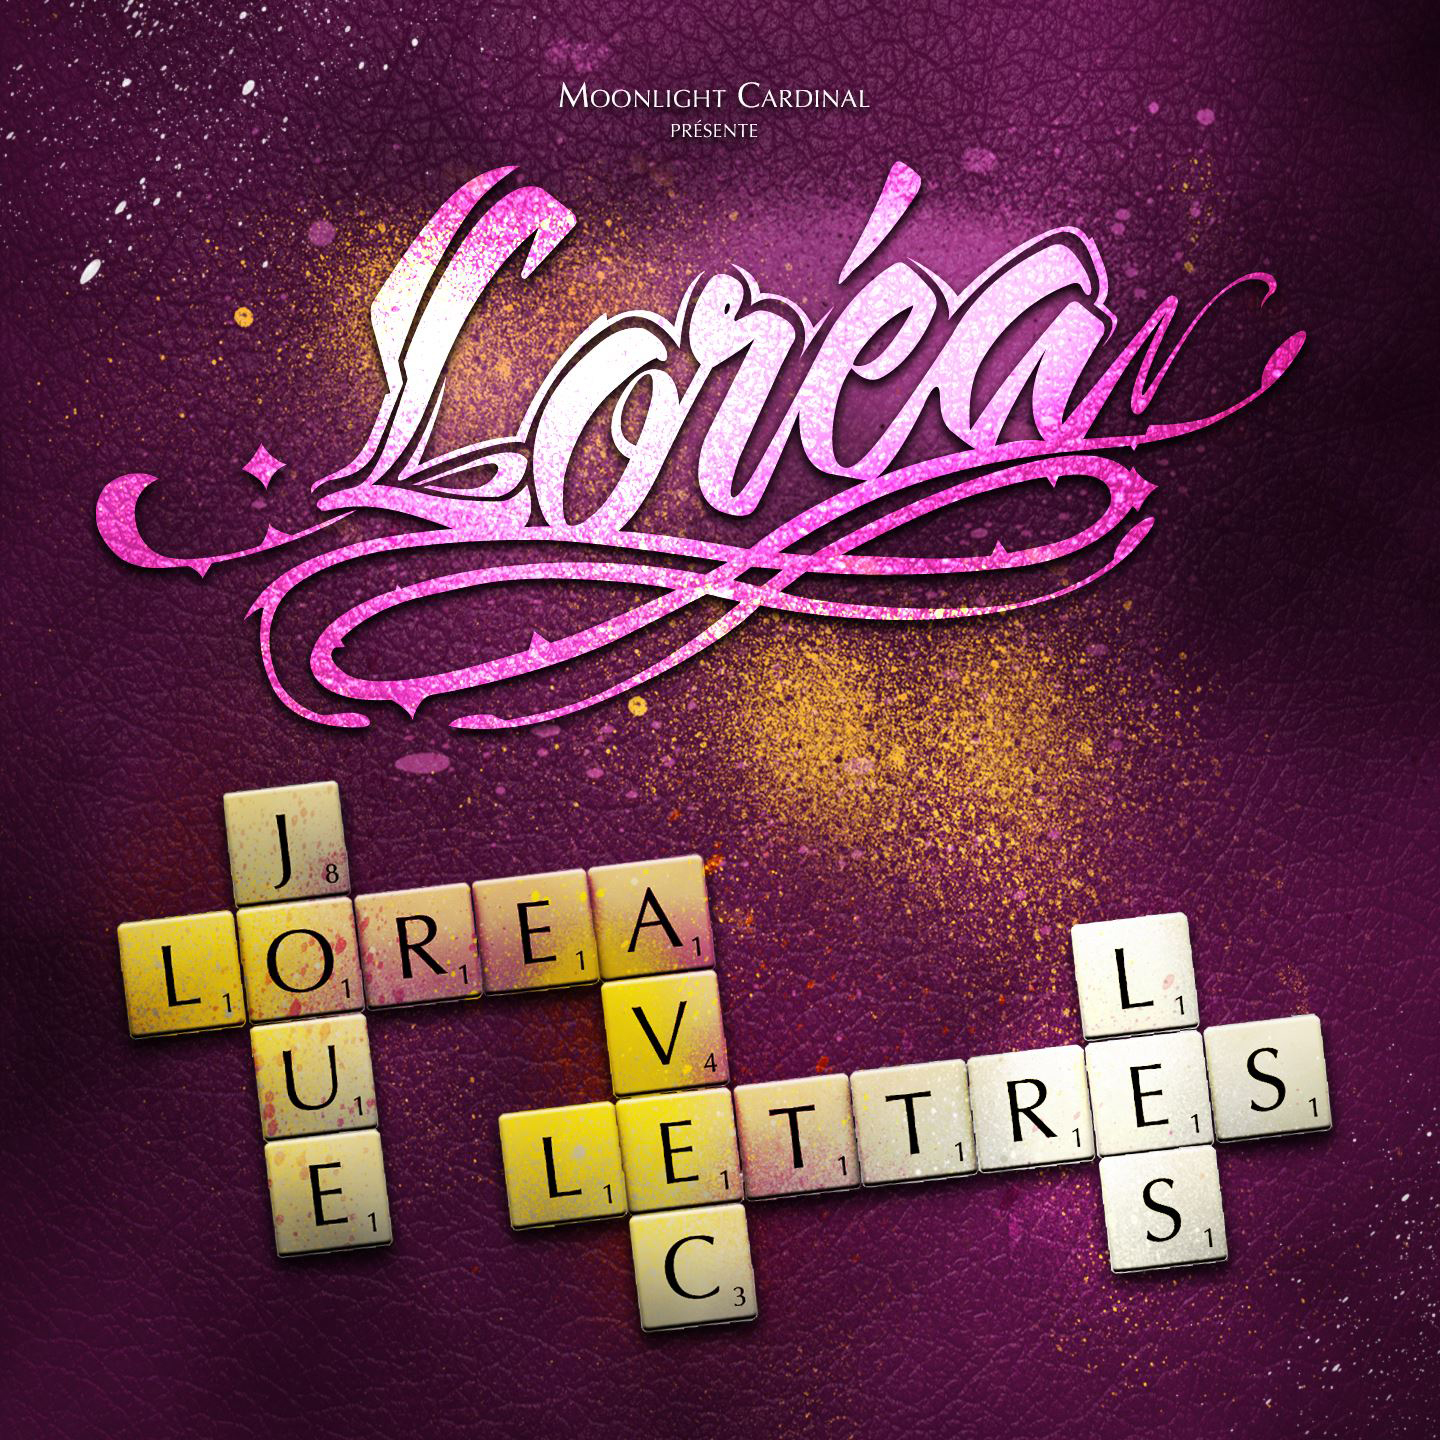 Cover de l'album de Loréa - Joue avec les lettres. Réalisé par Loseou